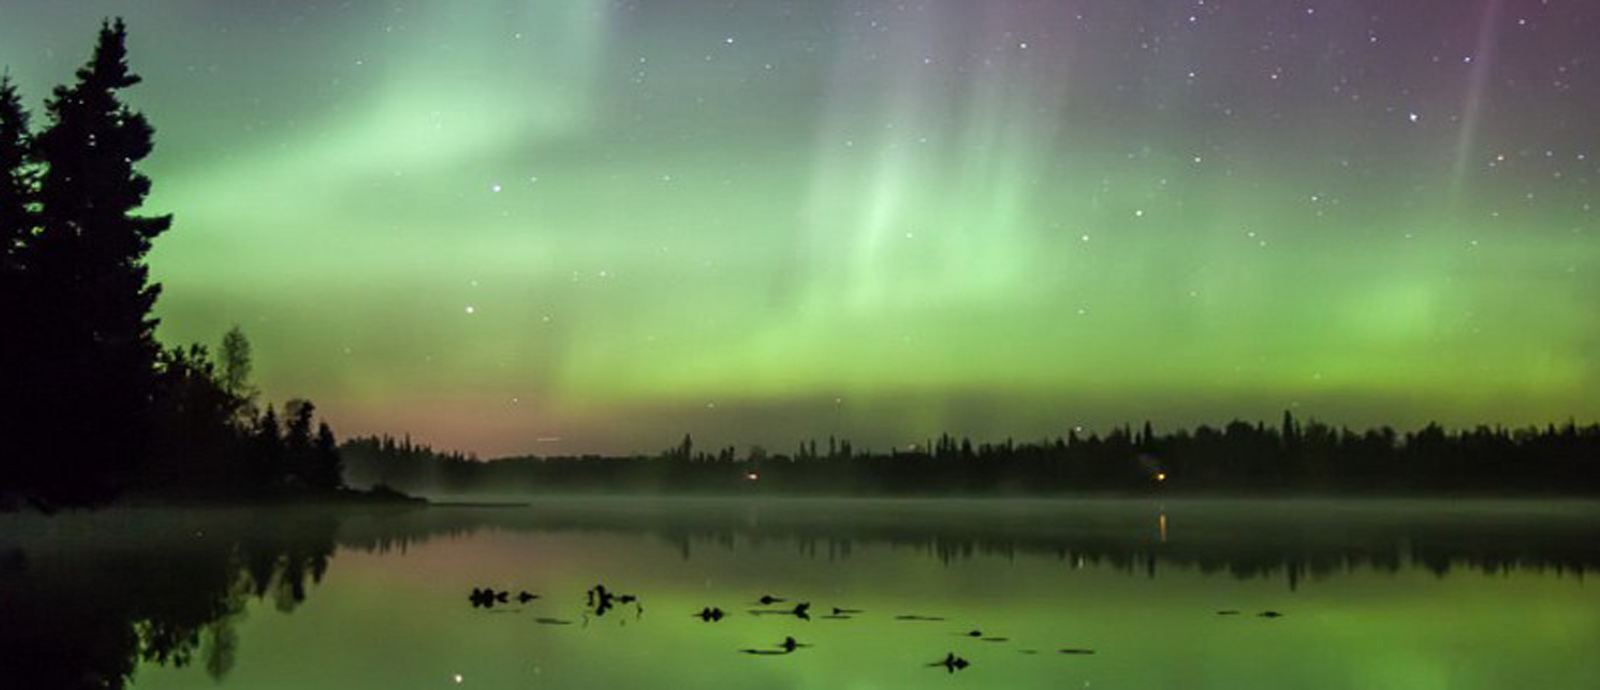 viajes a alaska, donde ver aurora boreales, viajes al polo norte